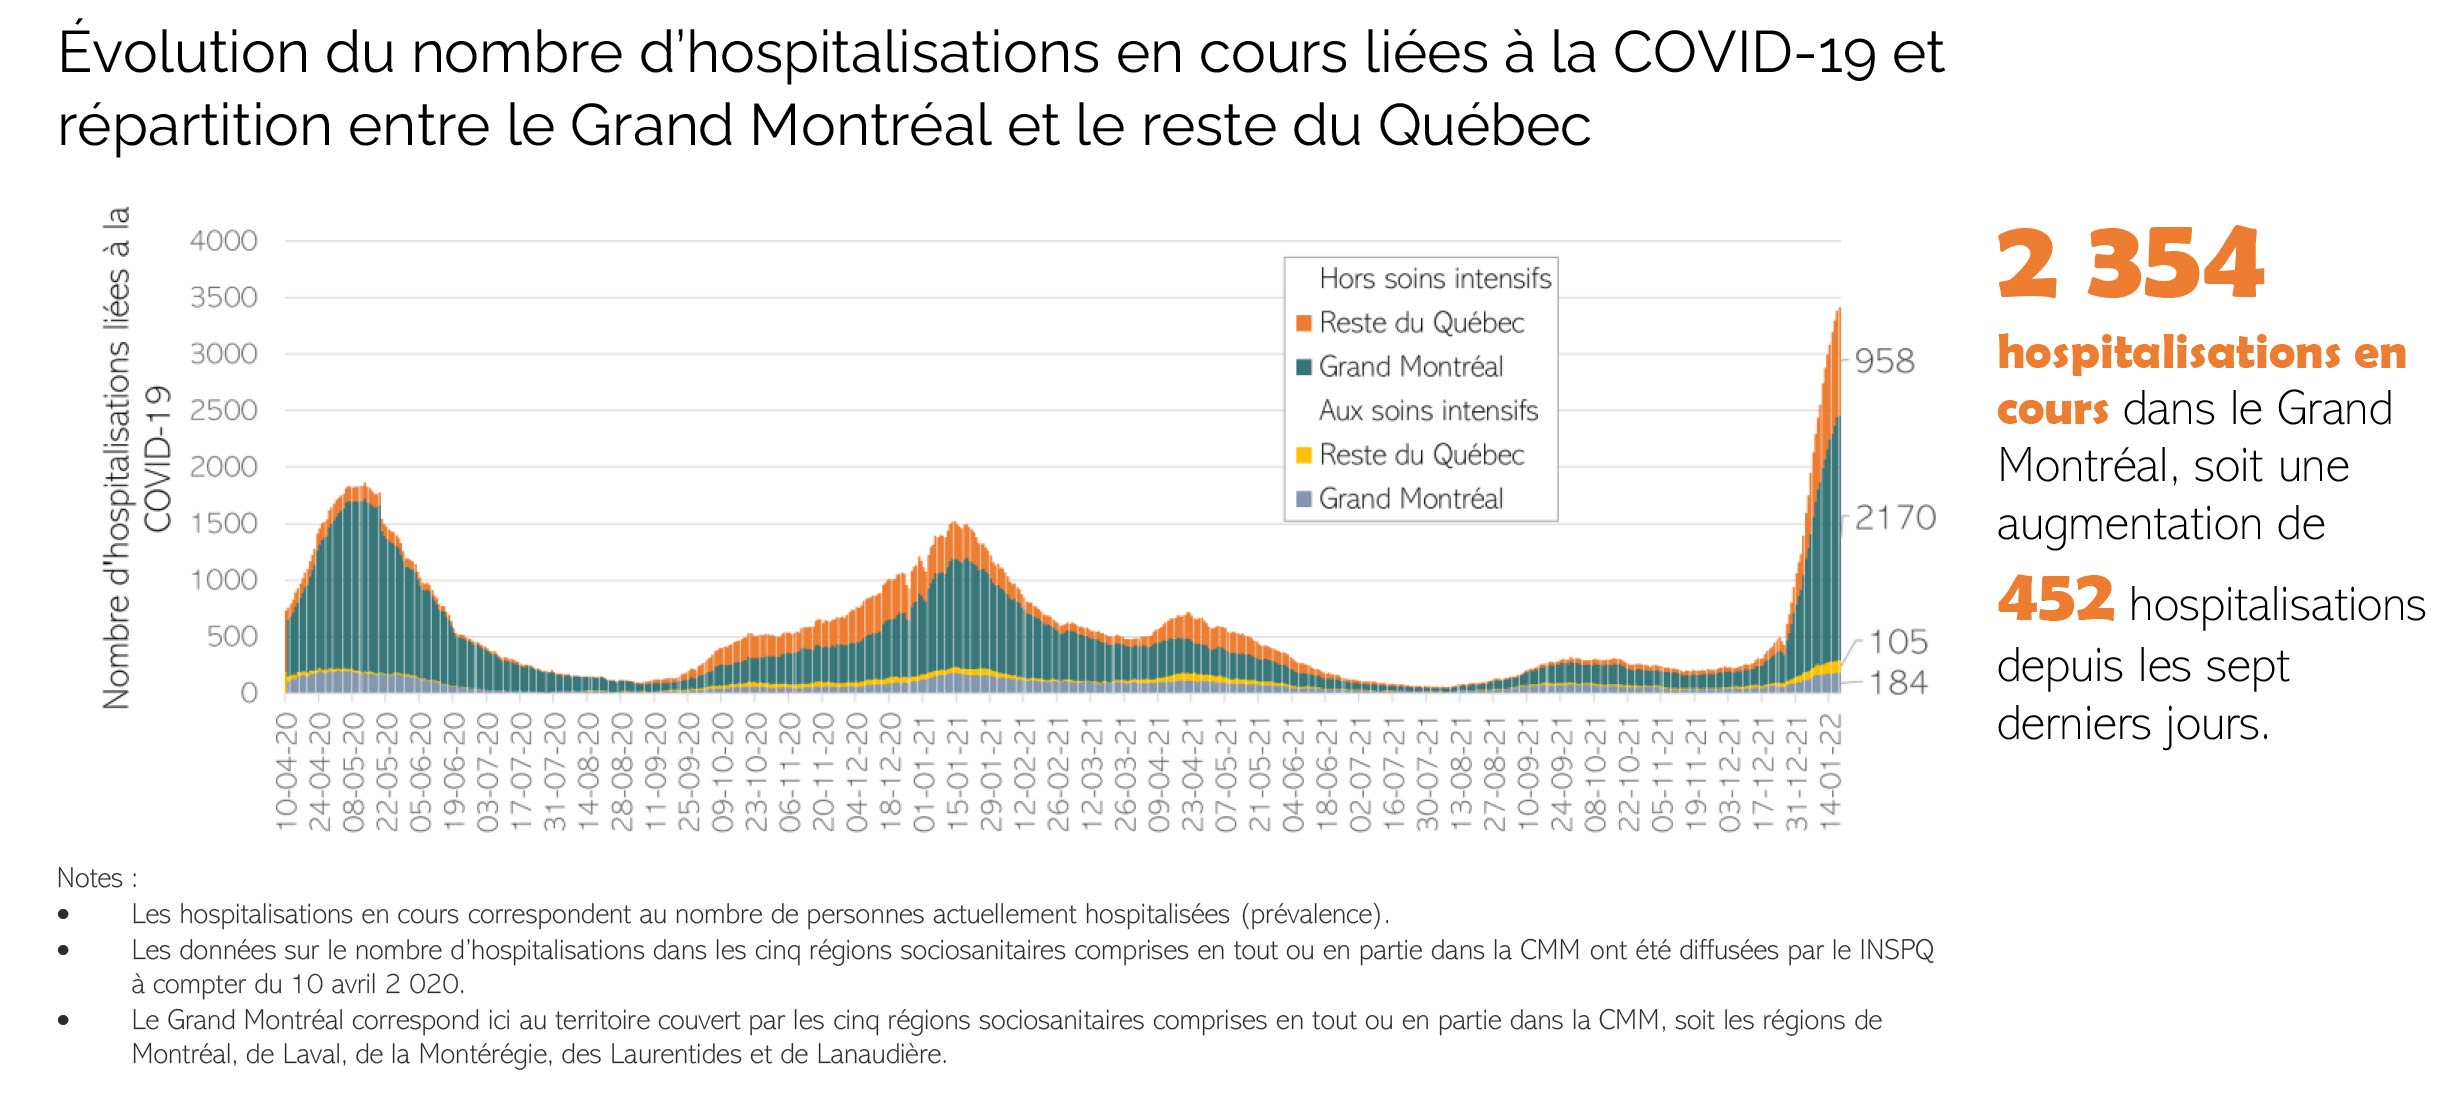 Hospitalisations en cours liées à la COVID-19 dans le Grand Montréal par MRC